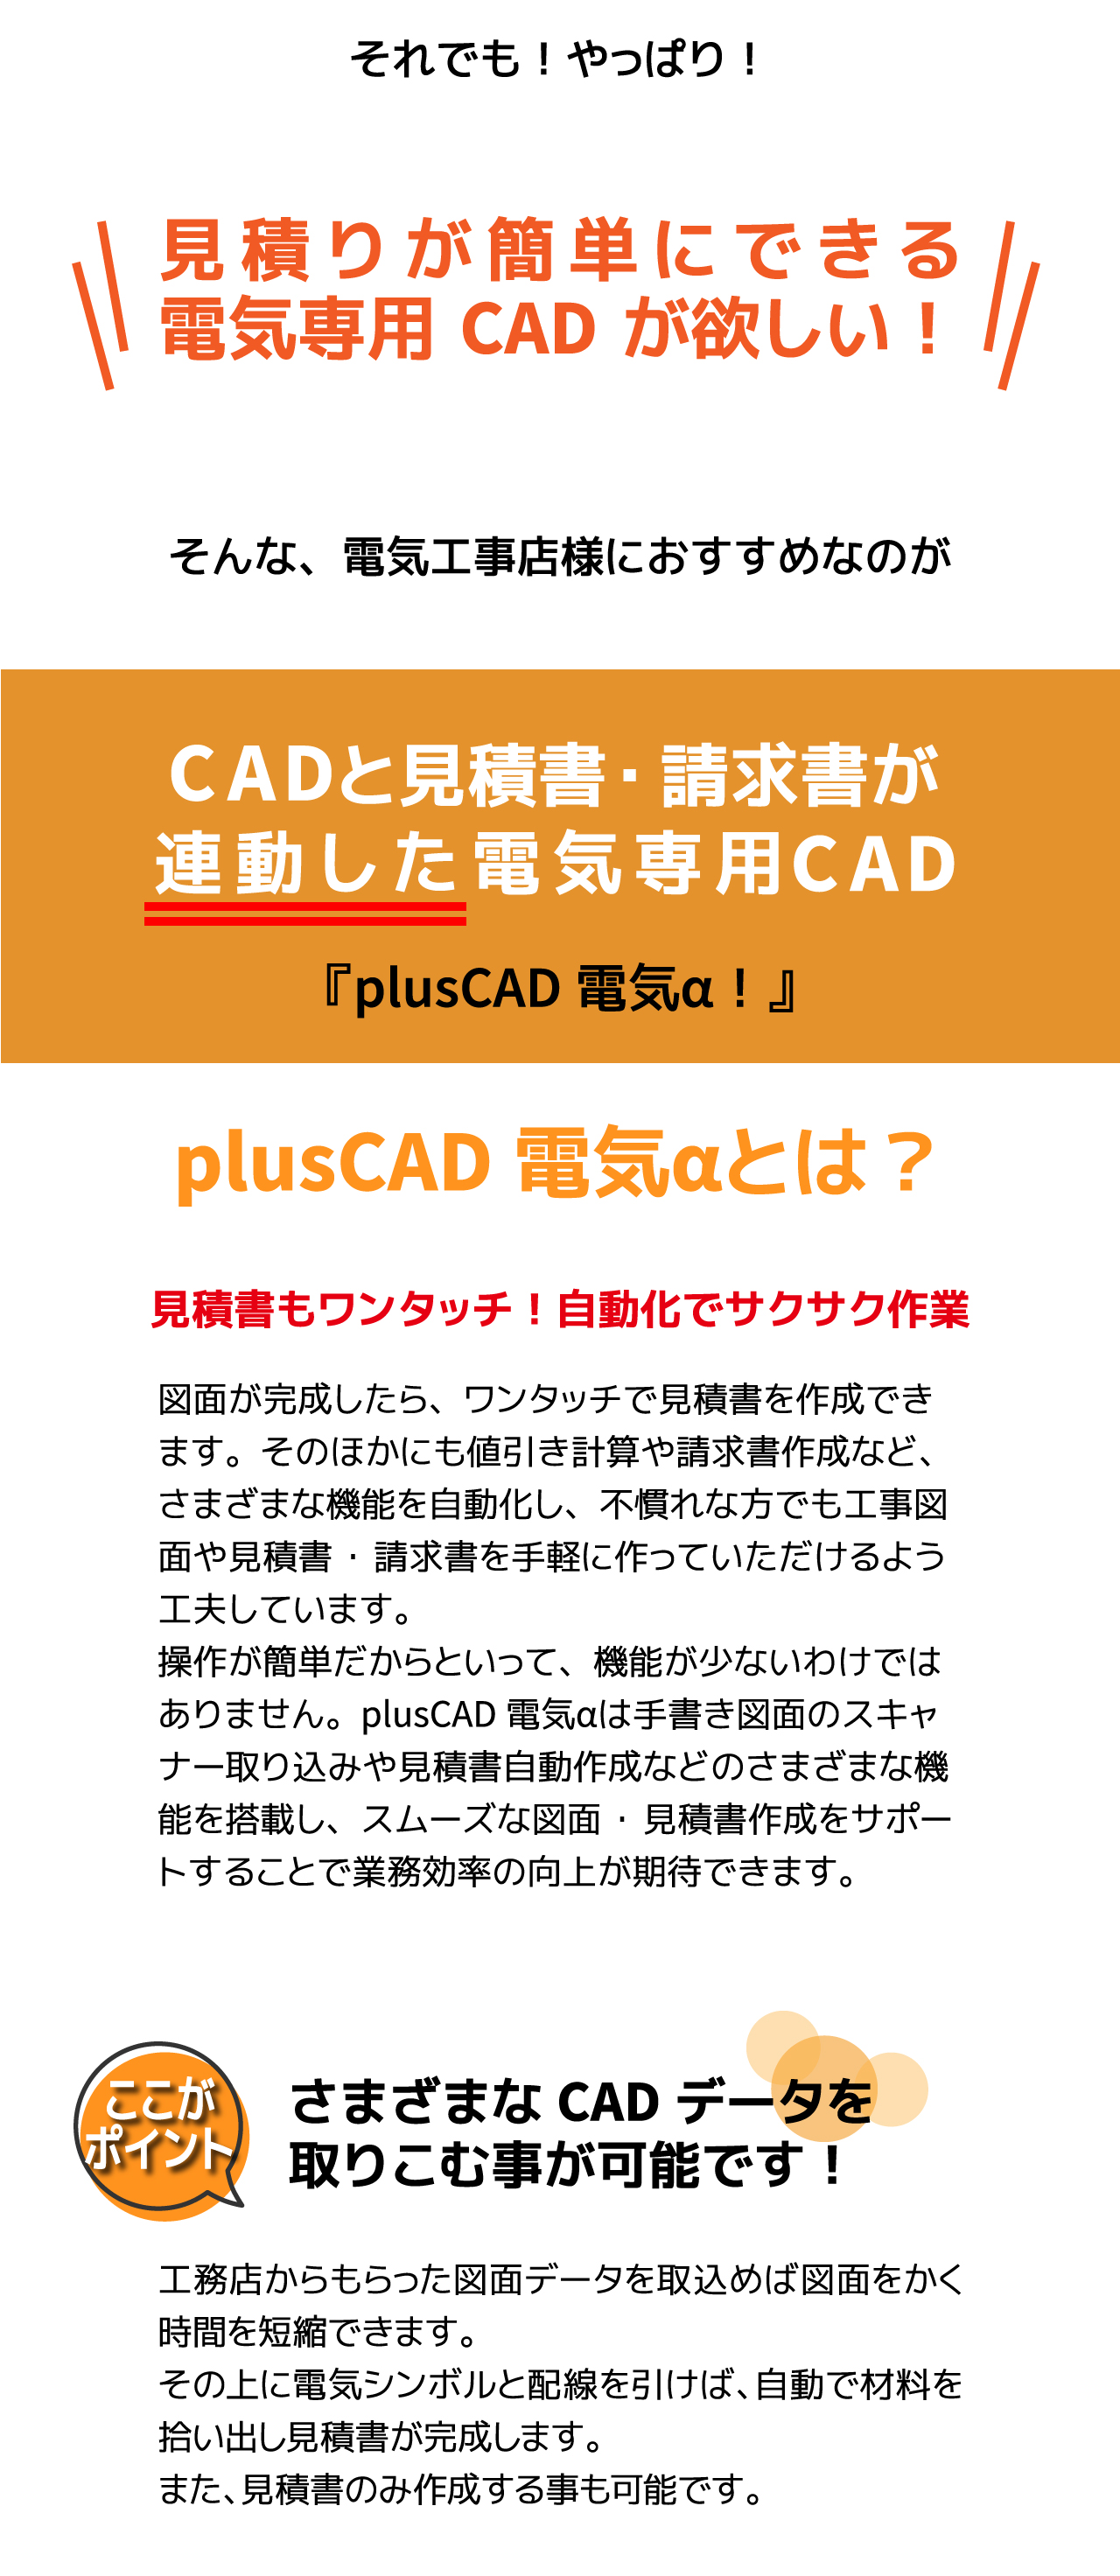 電気工事店様におすすめなのがCADと見積書・請求書が連動した電気専用CAD『plusCAD電気α』